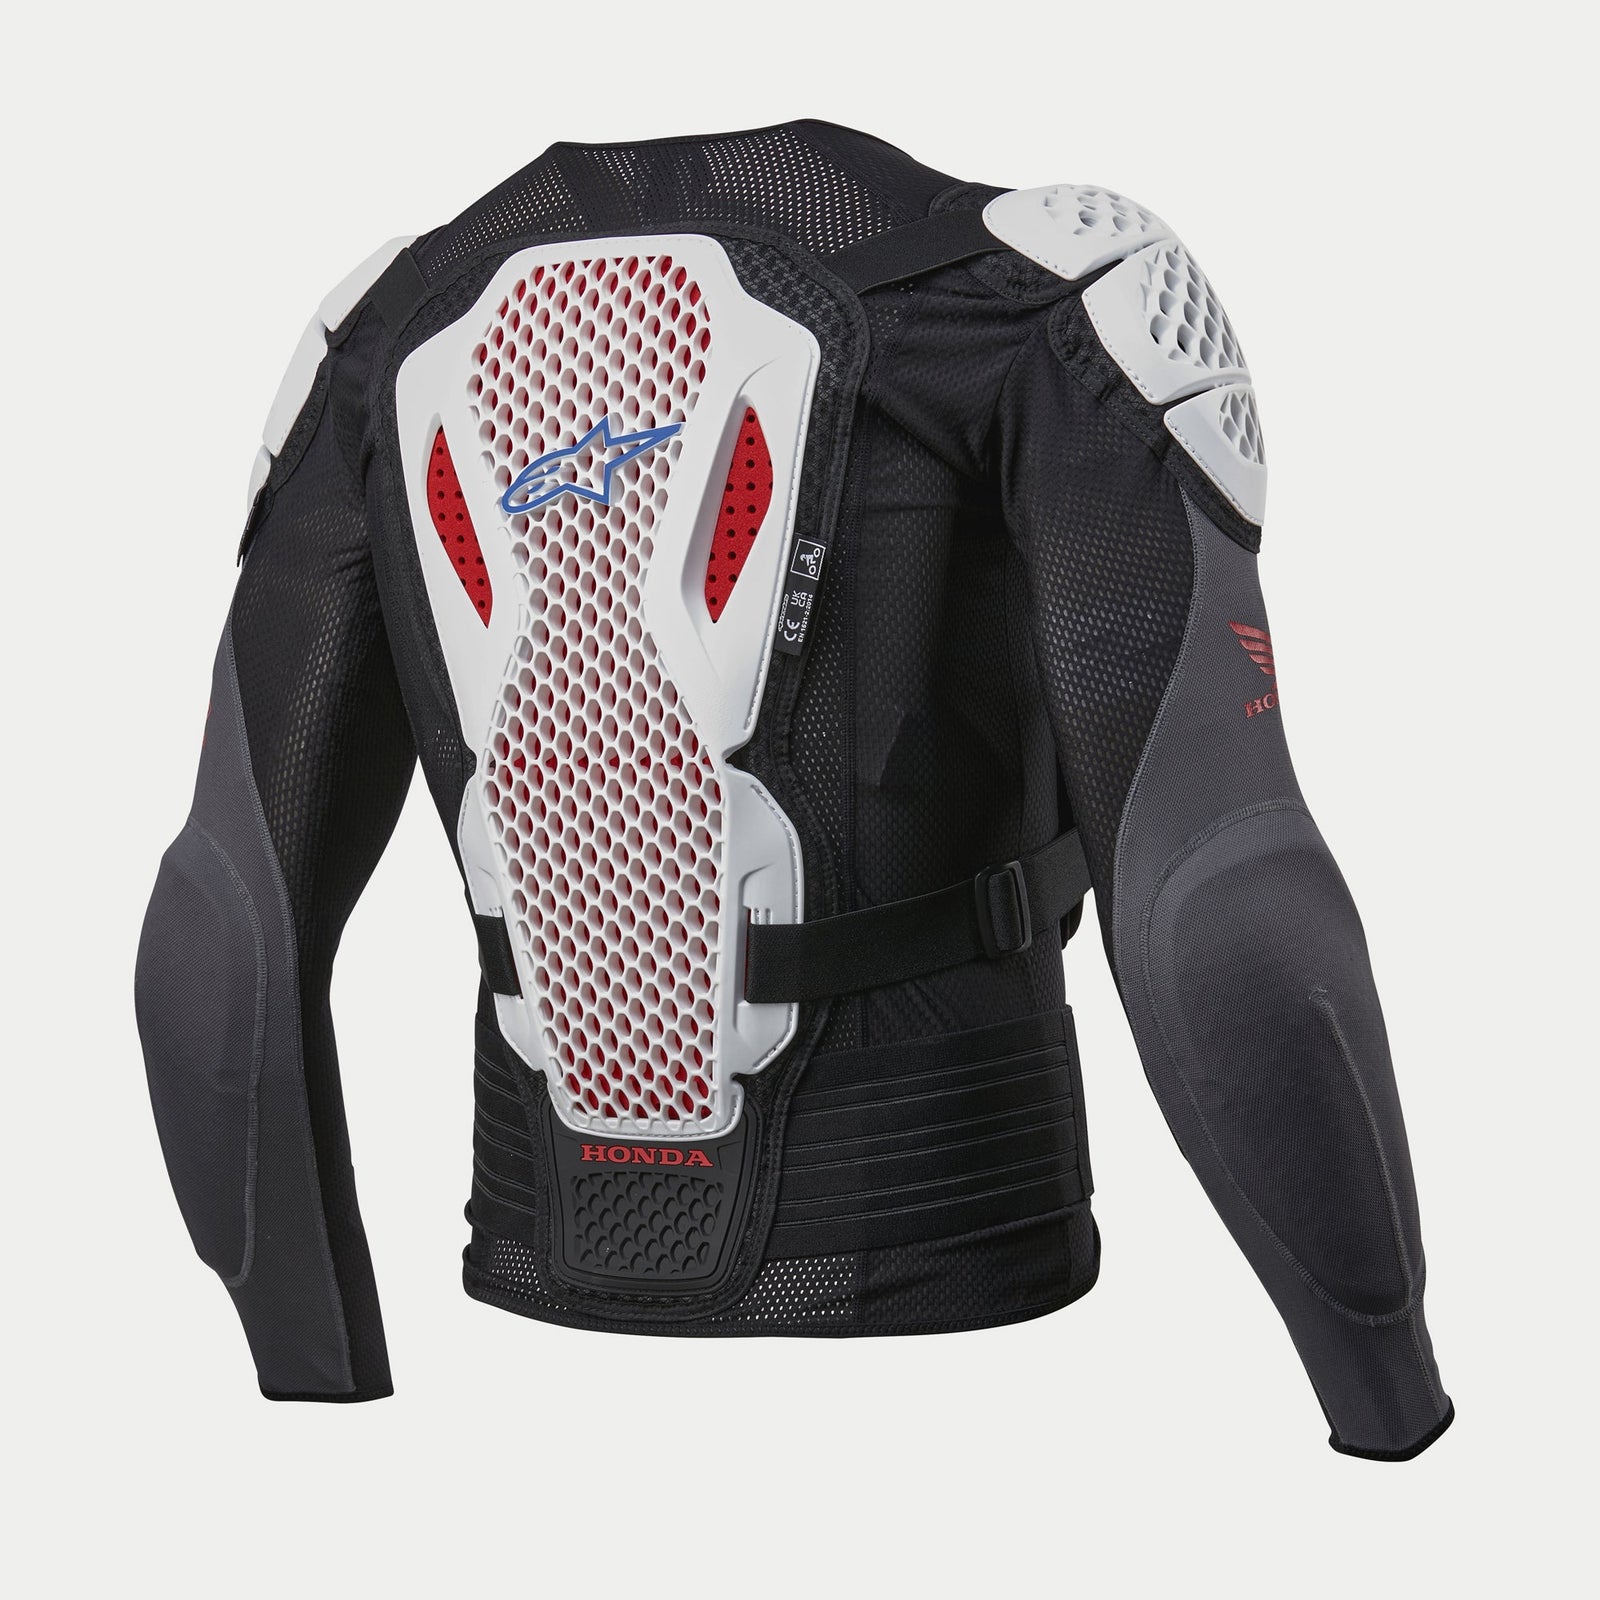 Honda Bionic Plus V2 Schutz Jacke